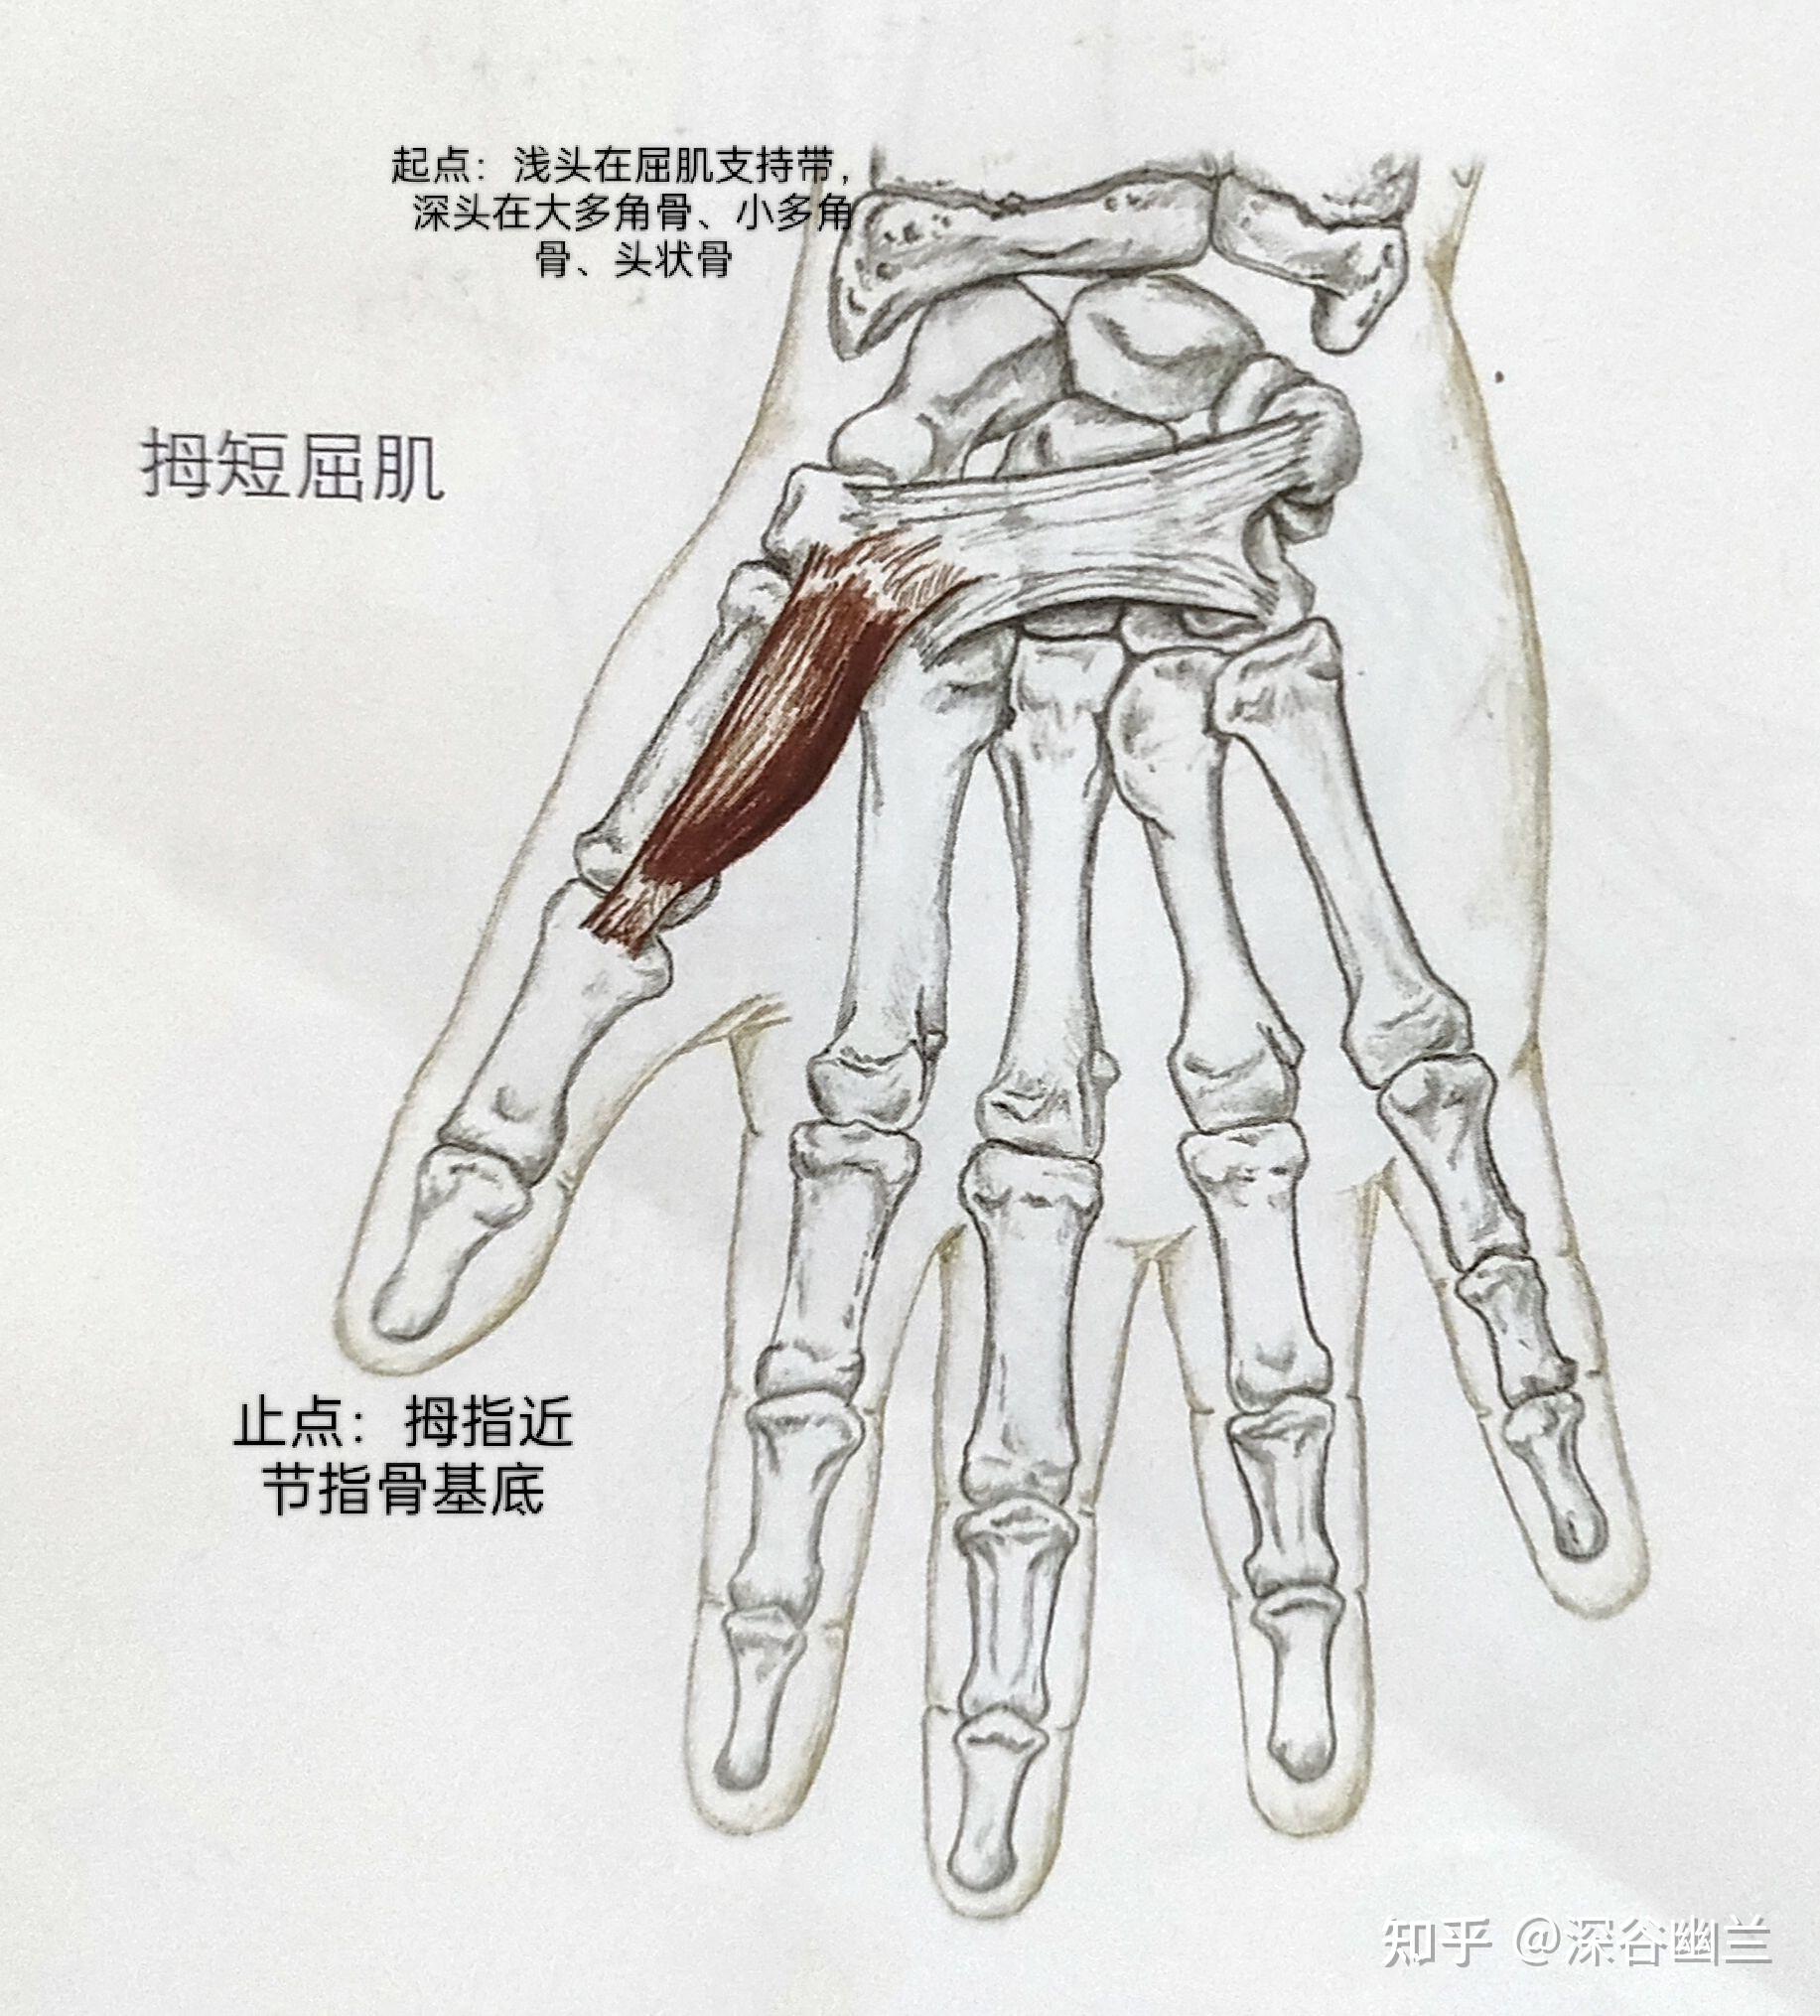 小指短屈肌(小指),指深屈肌,指浅屈肌,示,中,环,小指屈曲的肌肉有:骨